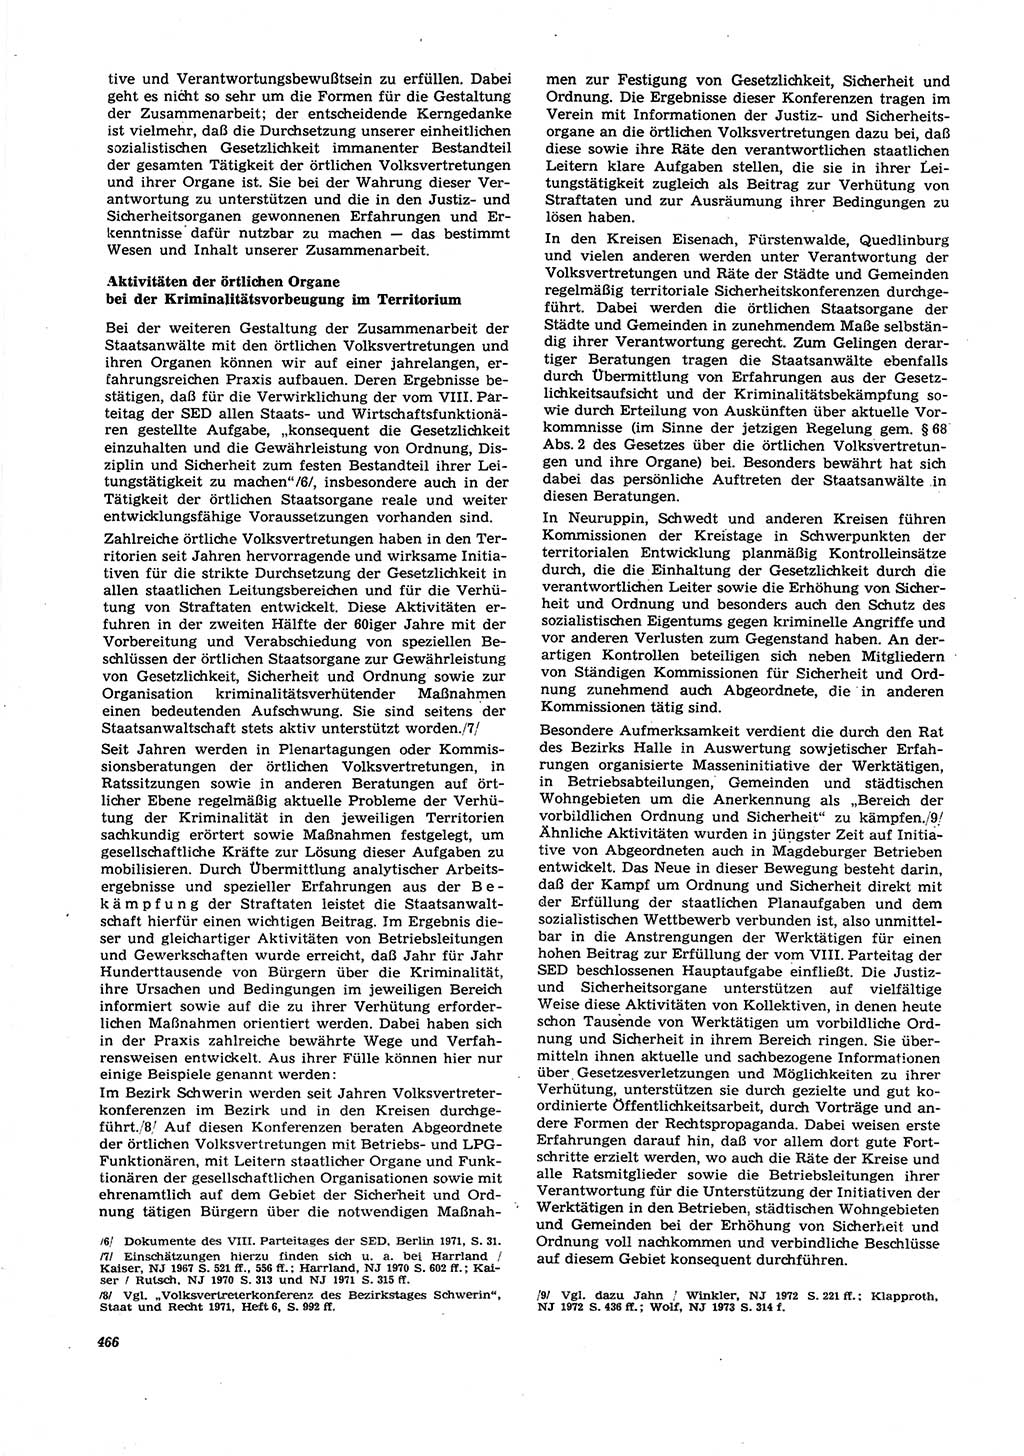 Neue Justiz (NJ), Zeitschrift für Recht und Rechtswissenschaft [Deutsche Demokratische Republik (DDR)], 27. Jahrgang 1973, Seite 466 (NJ DDR 1973, S. 466)